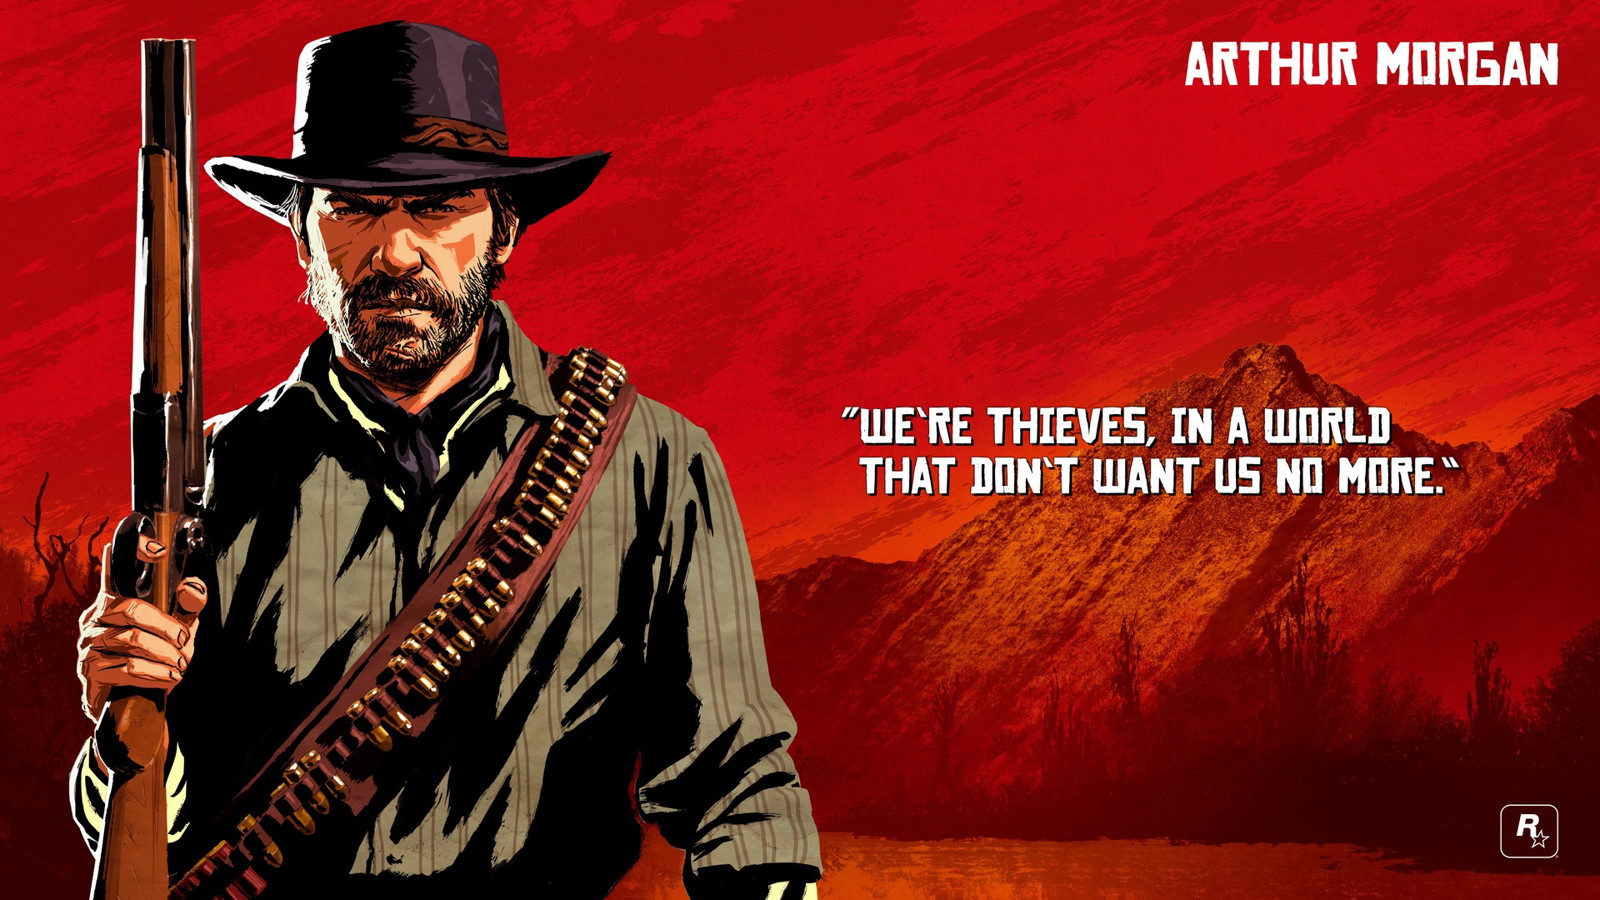 Arthur Morgan artwork from Red Dead Redemption 2